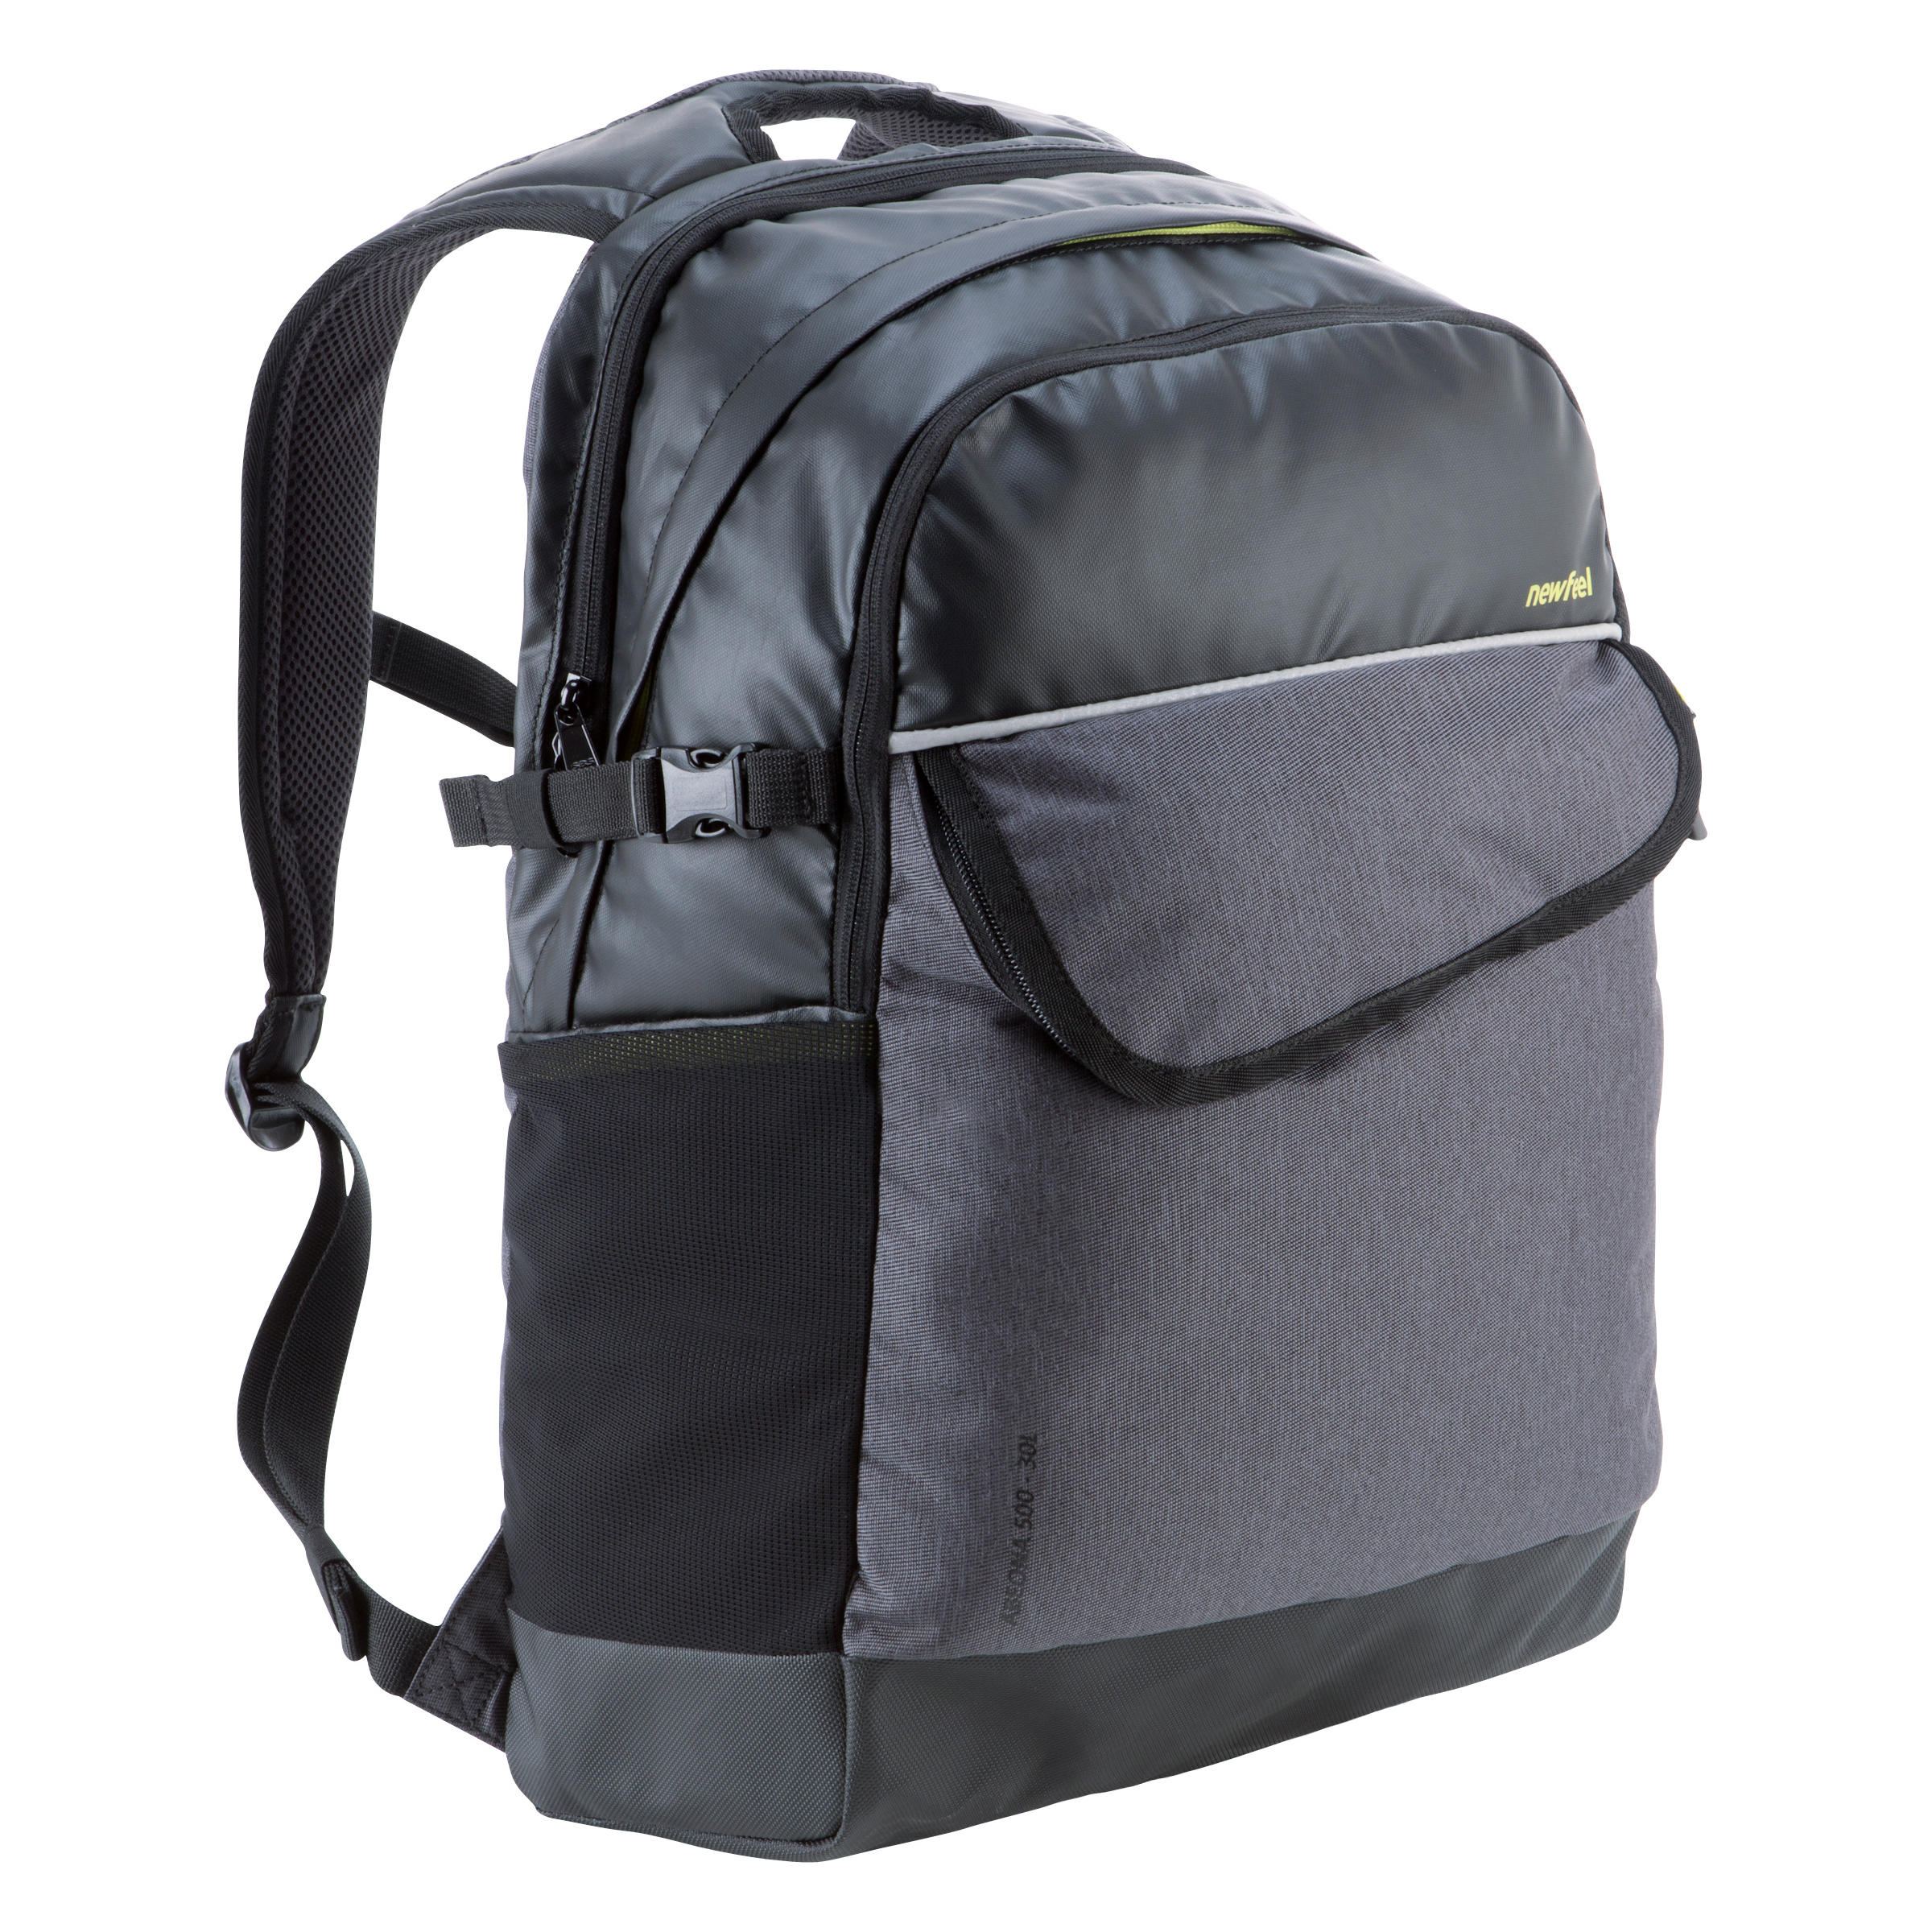 newfeel abeona backpack